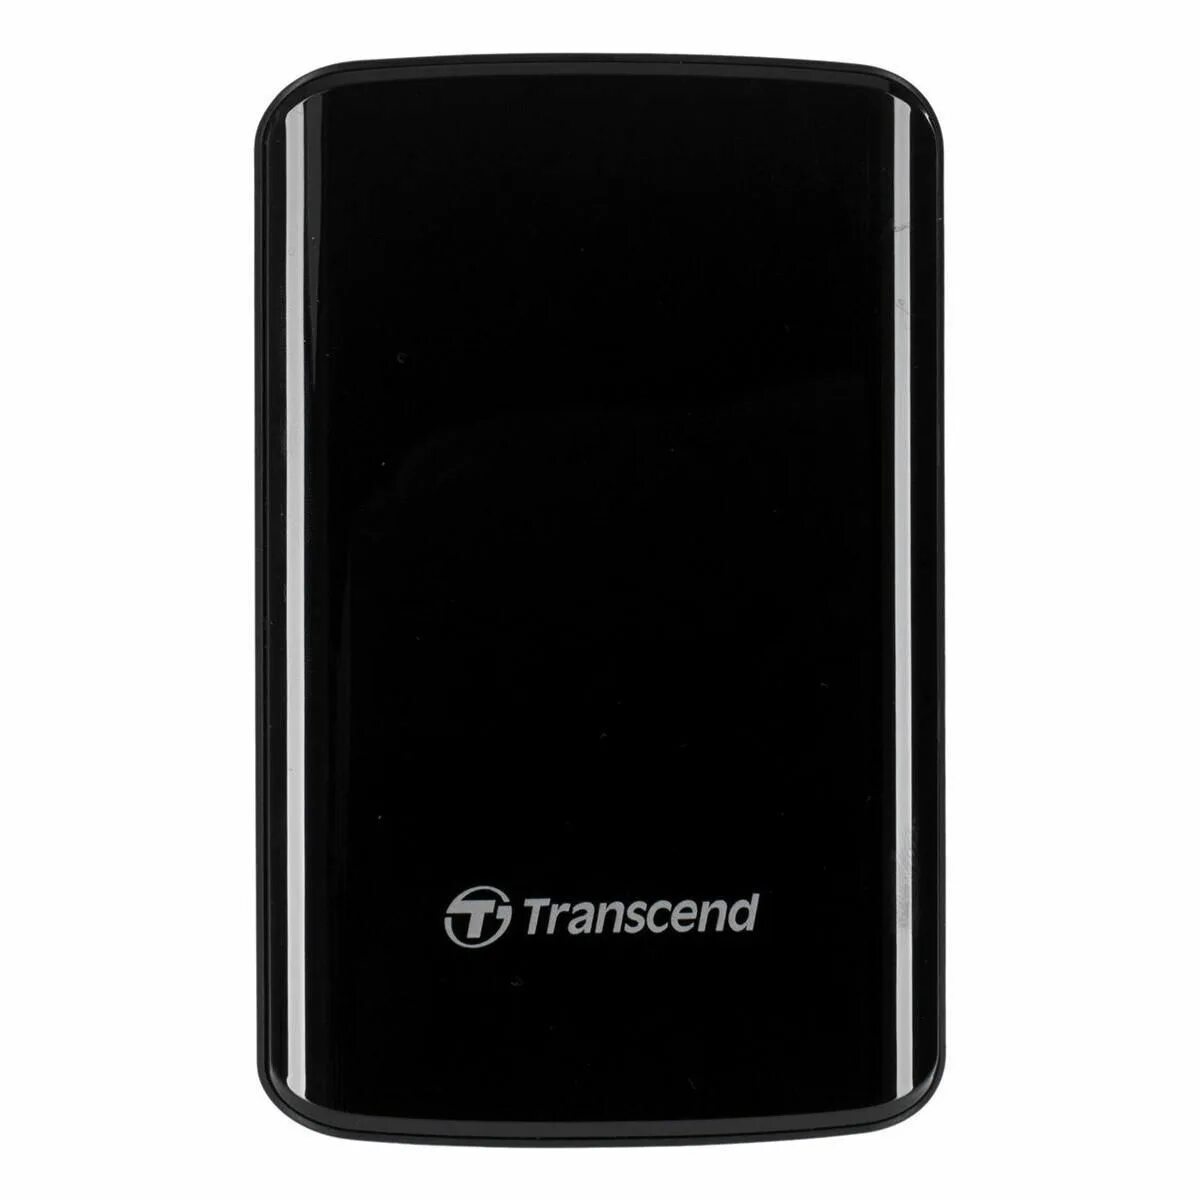 Купить жесткий transcend. Жесткий диск Transcend 500gb. Transcend HDD 500 GB. Transcend жесткий диск 500 ГБ. Жёсткий диск Transcend на 500.